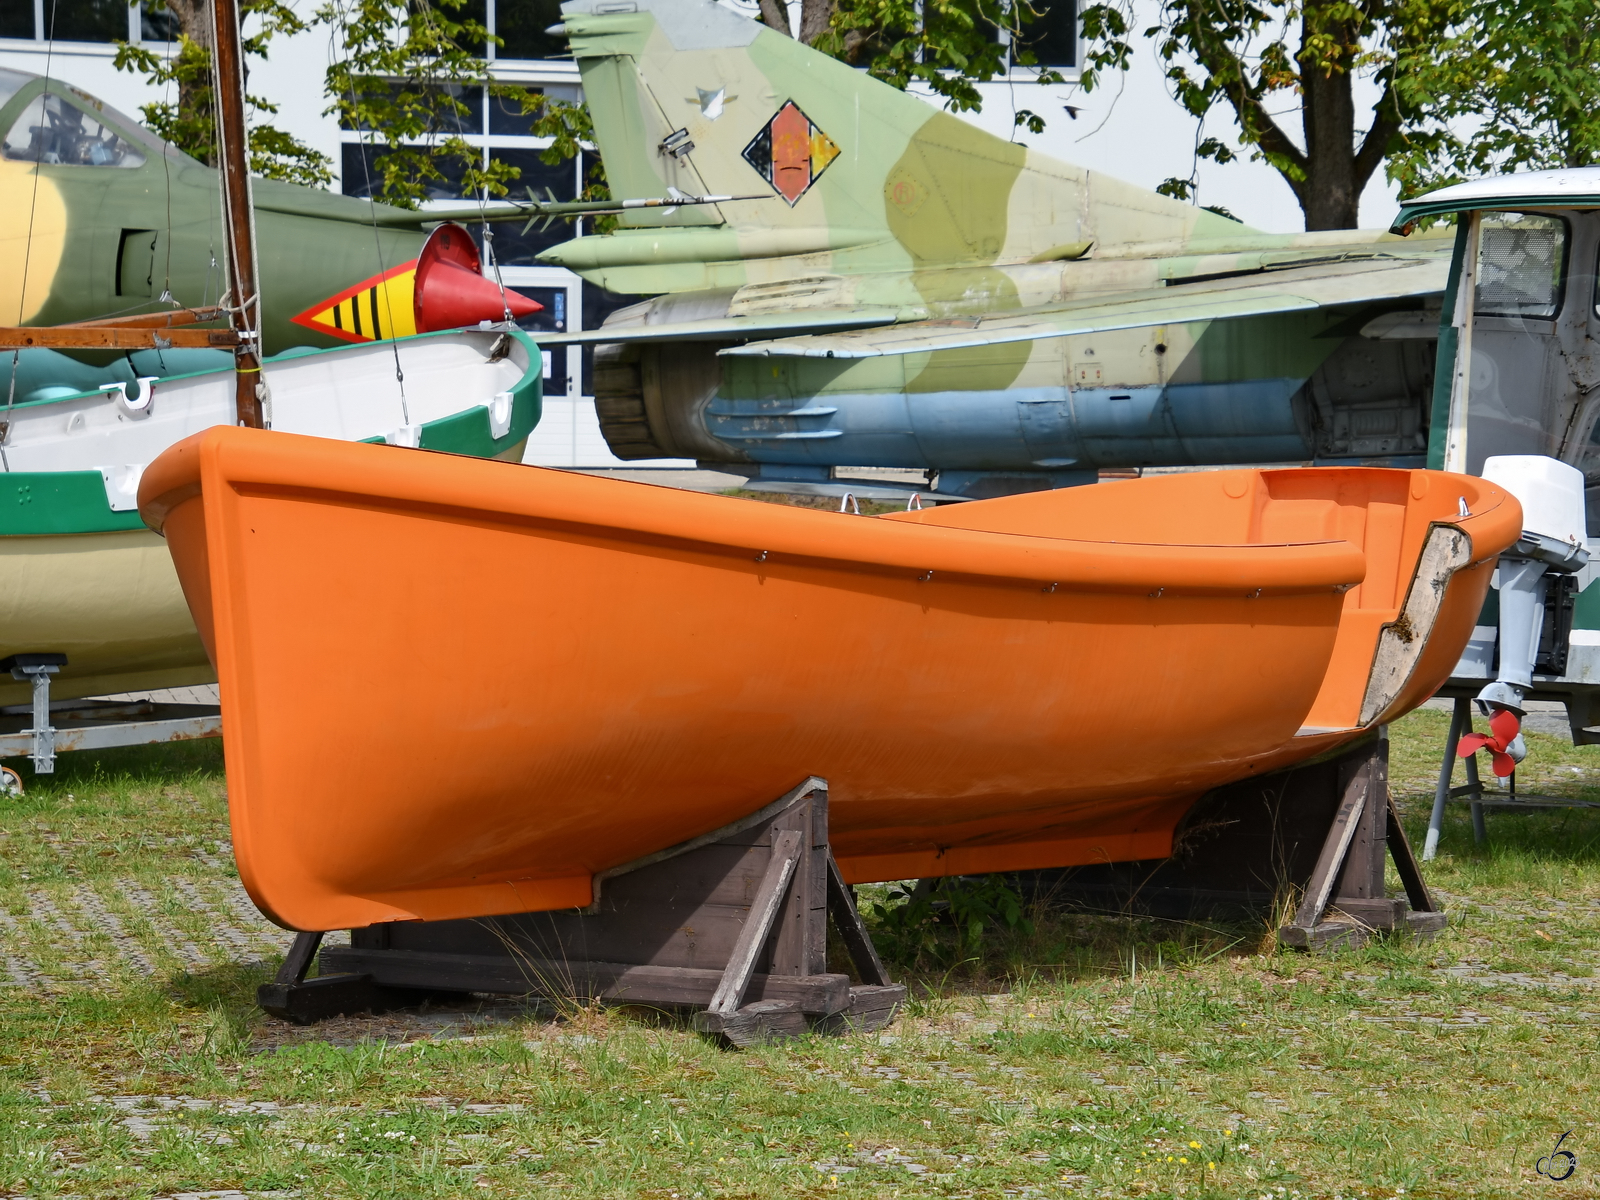 Mitte August 2023 war im Luftfahrttechnischen Museum Rechlin dieses Rettungsboot zu sehen.